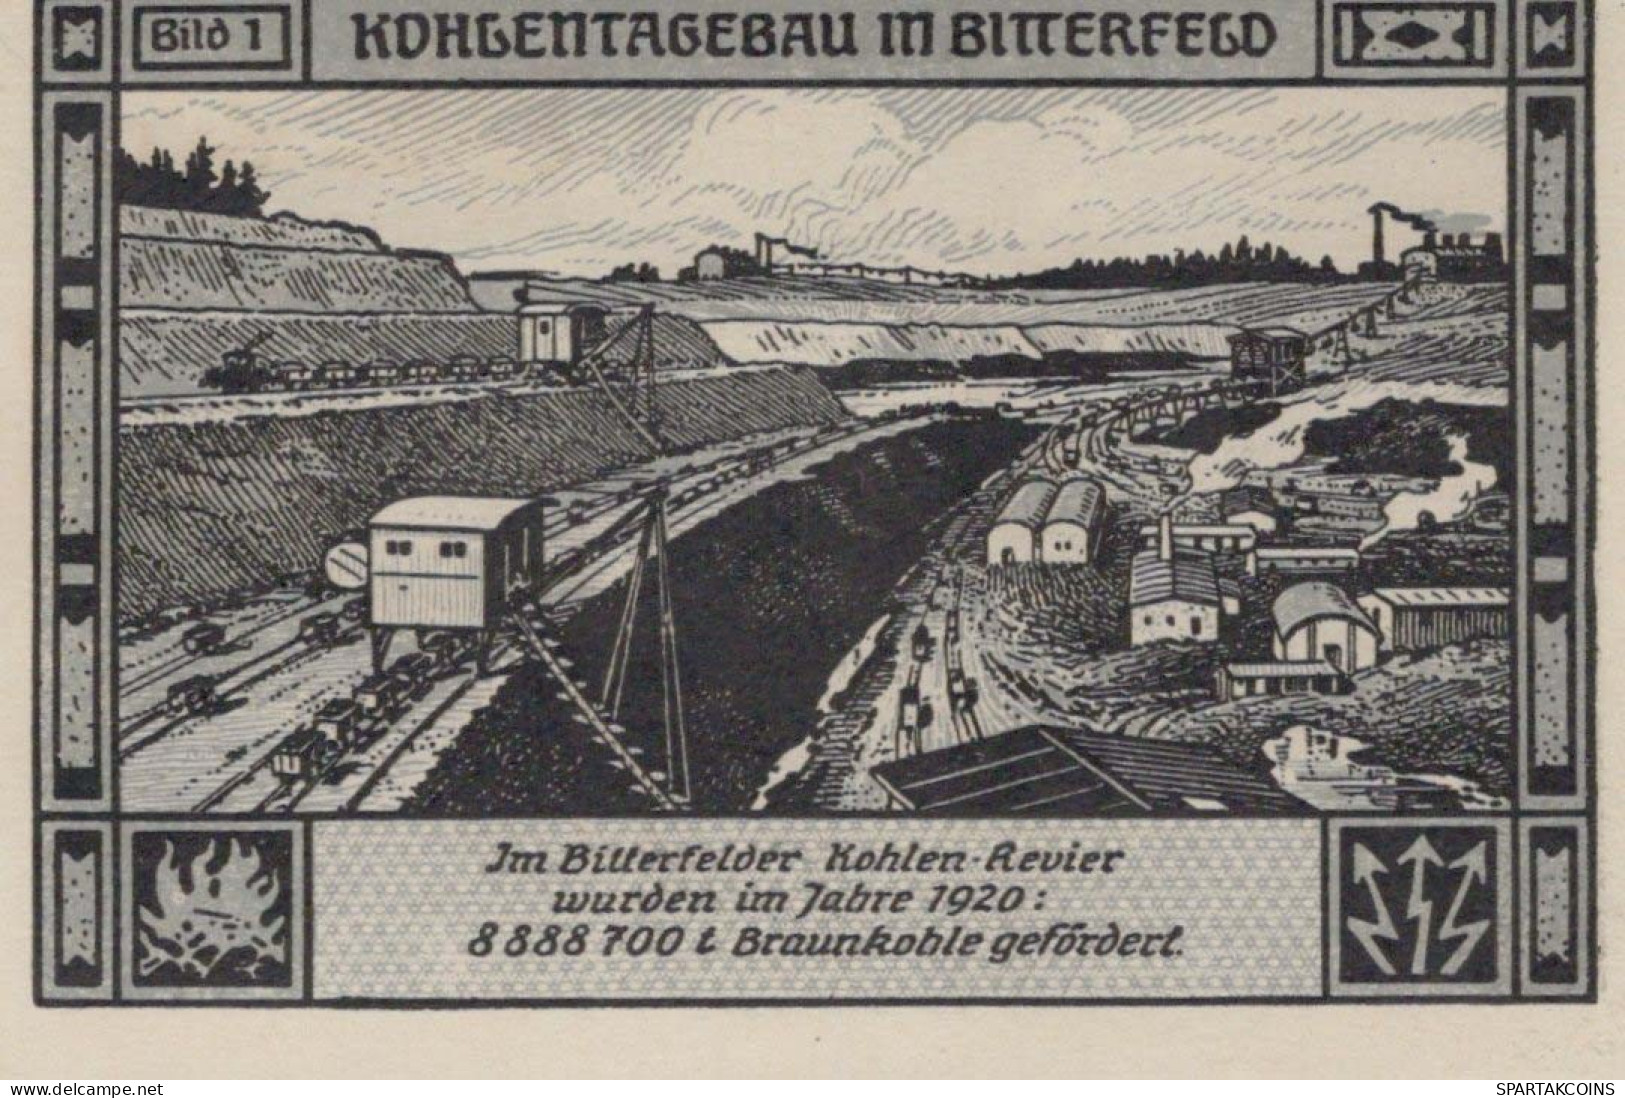 75 PFENNIG 1921 Stadt BITTERFIELD Westphalia UNC DEUTSCHLAND Notgeld #PA232 - [11] Emissioni Locali